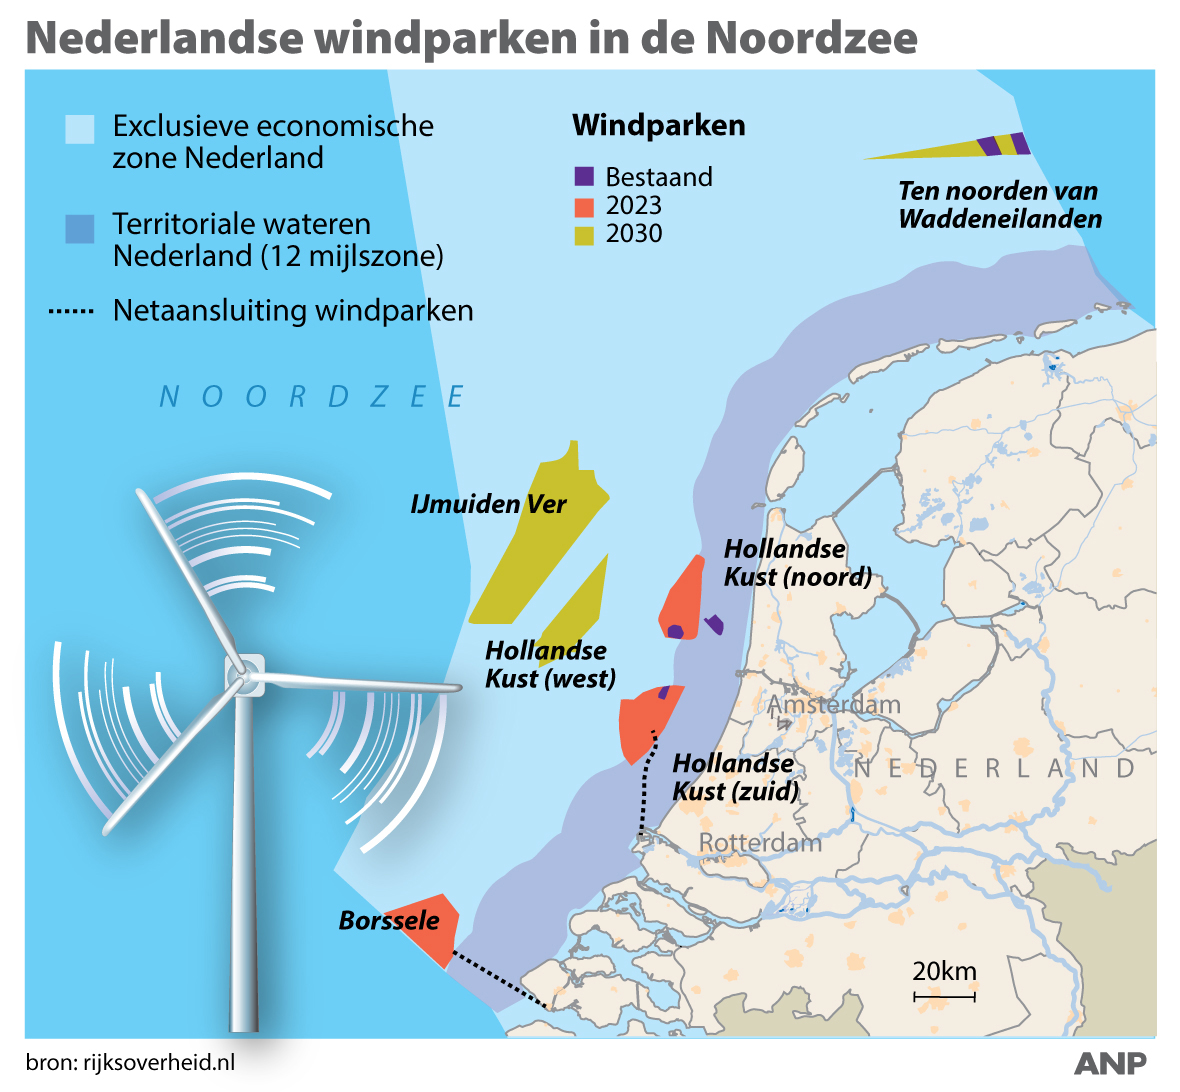 2018-03-27 10:15:49 Windparken in Noordzee, overzicht huidige en toekomstige windparken in exclusieve economische zone Nederland in de Noordzee. ANP INFOGRAPHICS